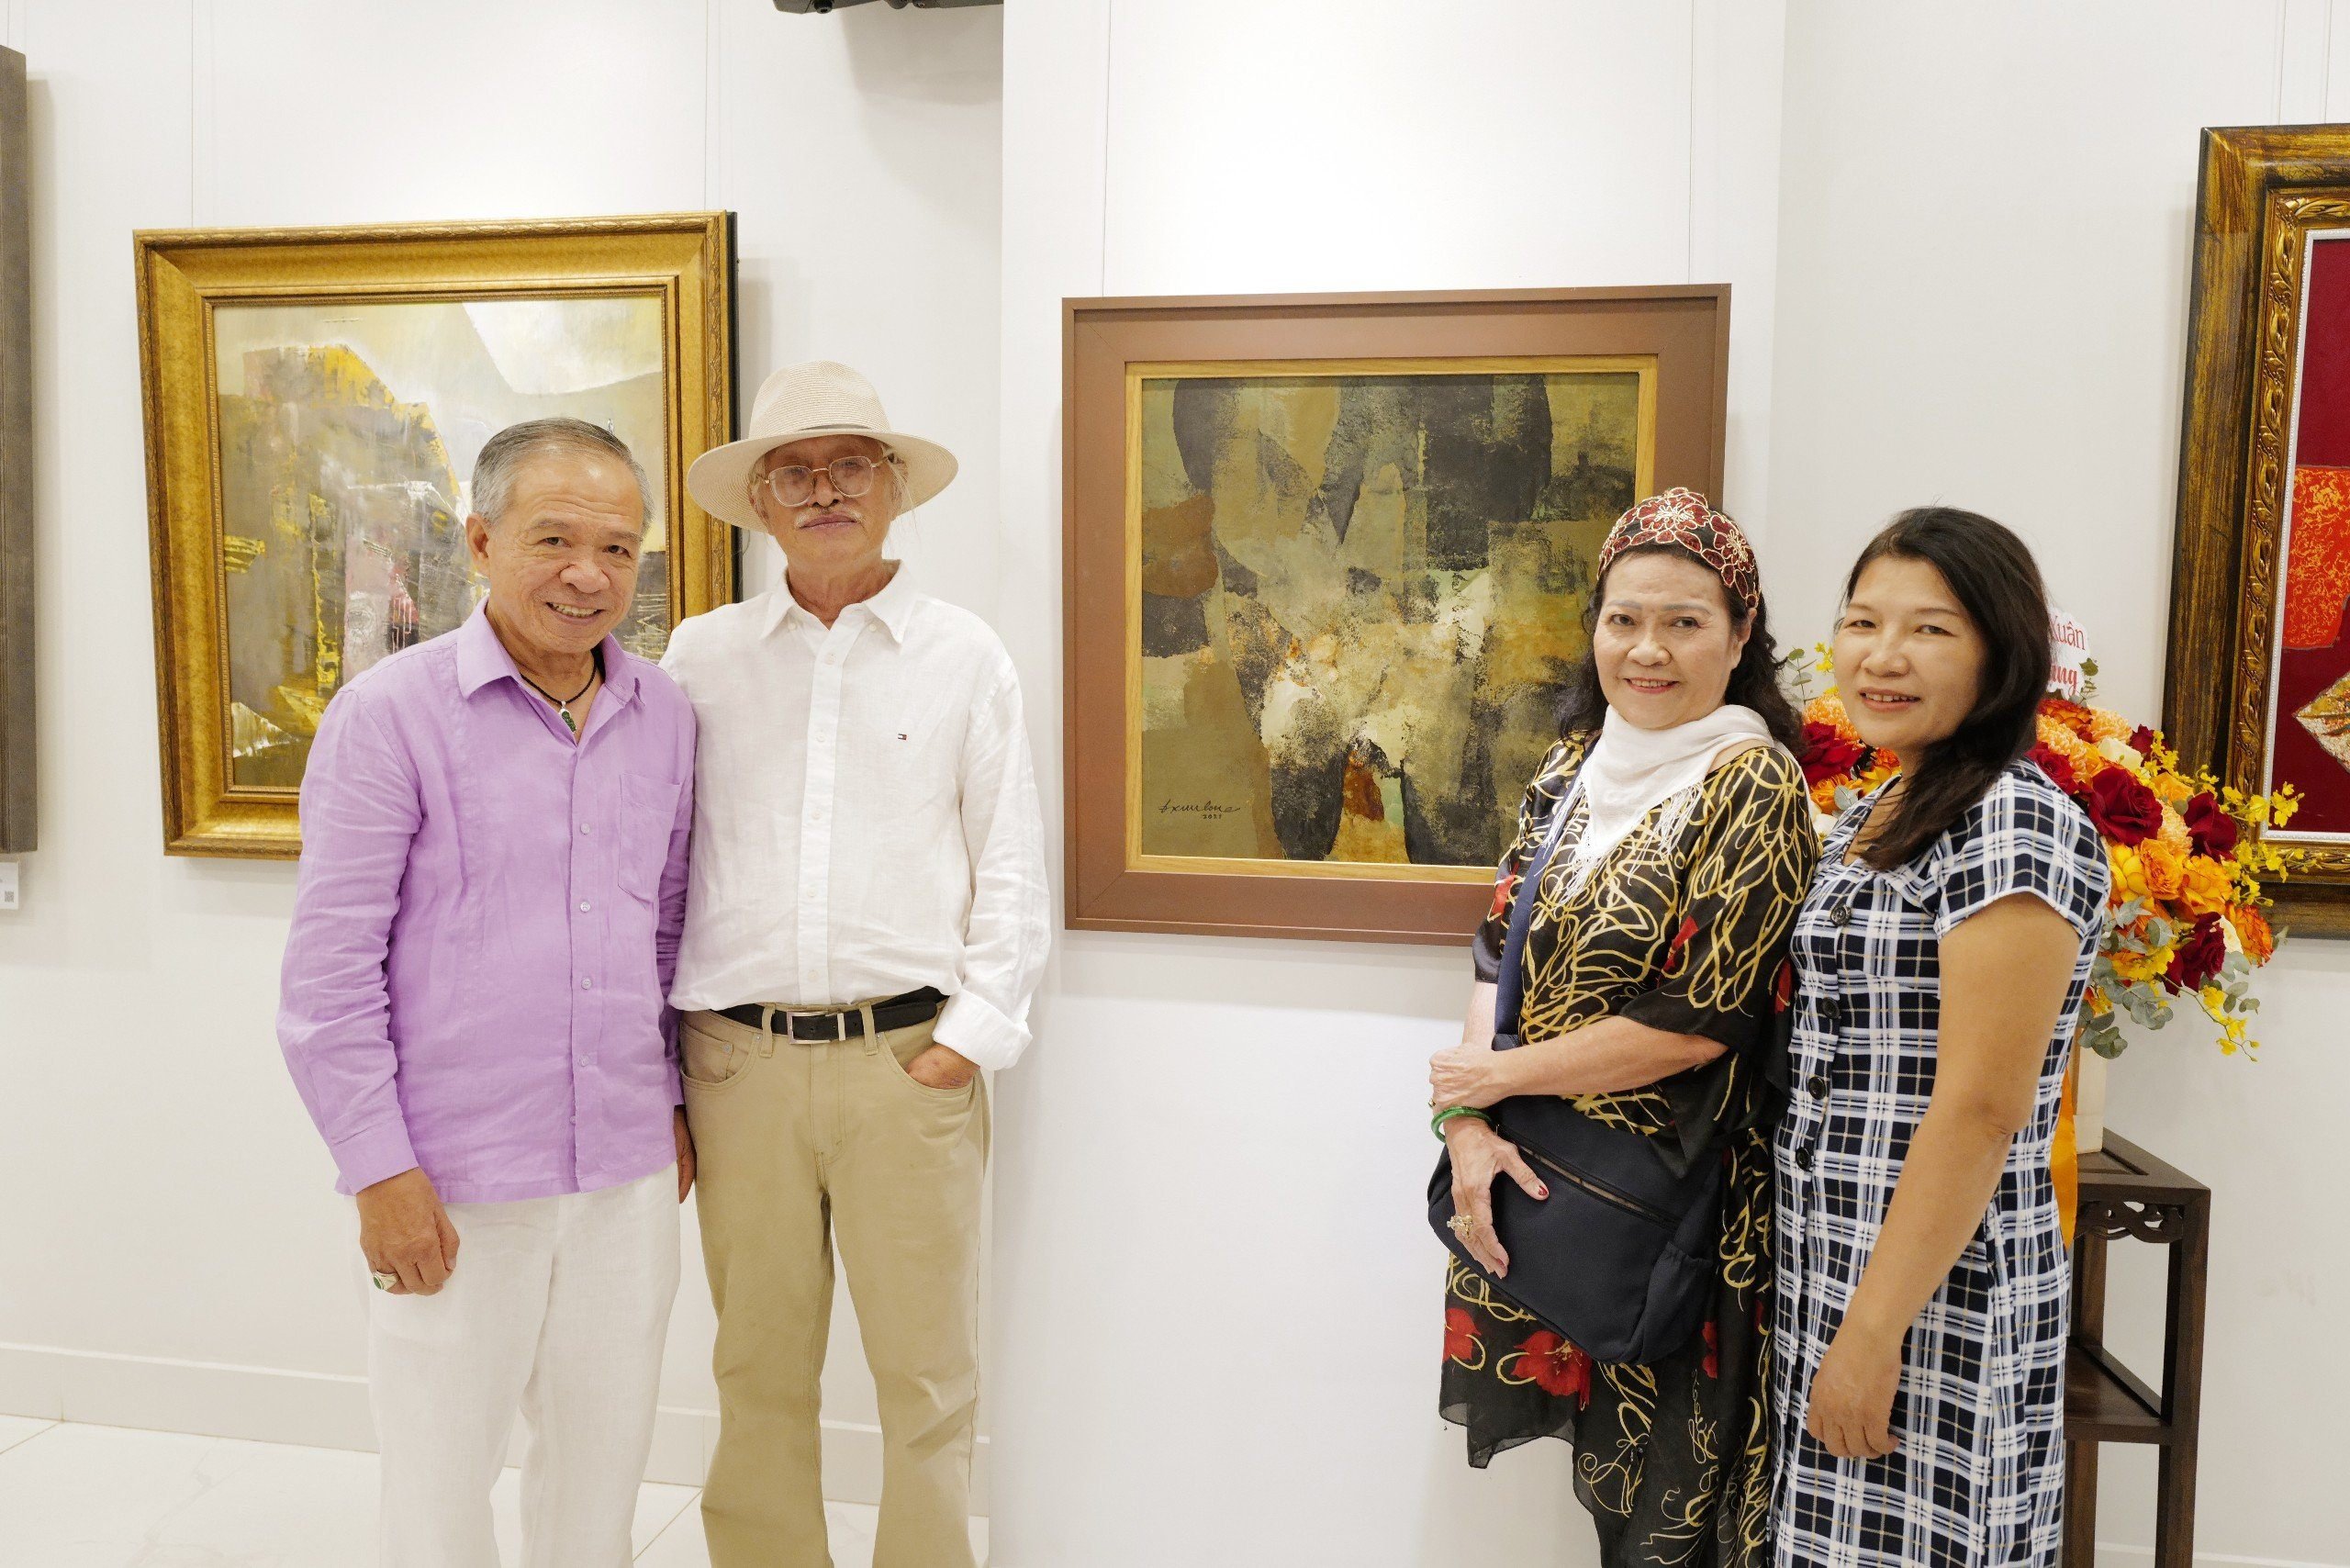 hà sưu tập-Luật sư Trương Văn Thuận, giám đốc Bình Minh Art Gallery chụp hình lưu niệm cùng họa sĩ Đặng Kim Long và các khách mời tại triển lãm - Ảnh: TV